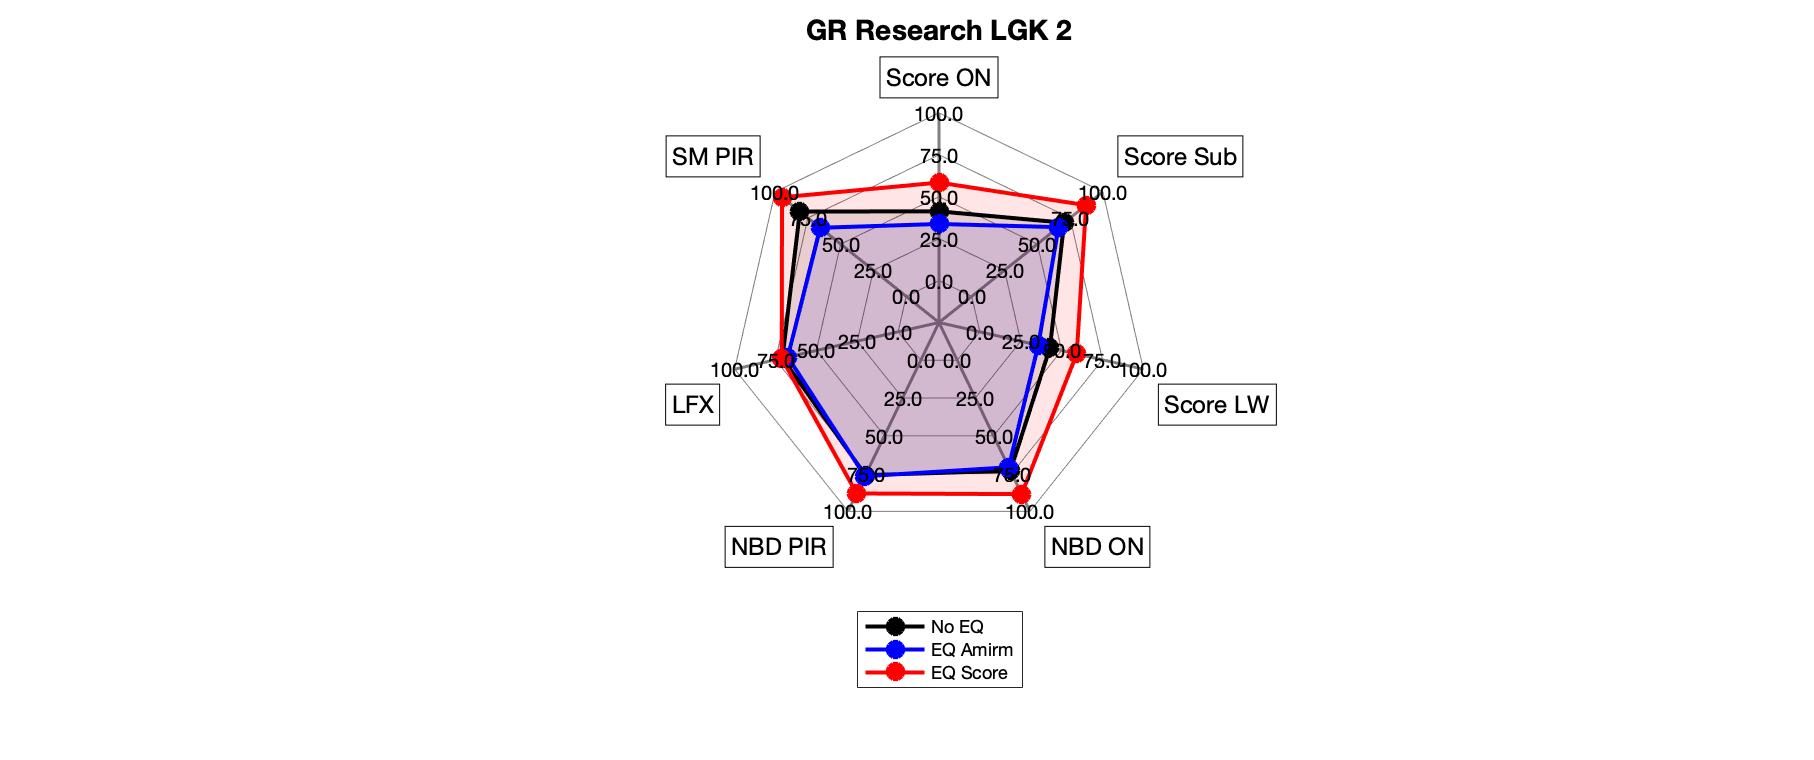 GR Research LGK 2 Radar.png